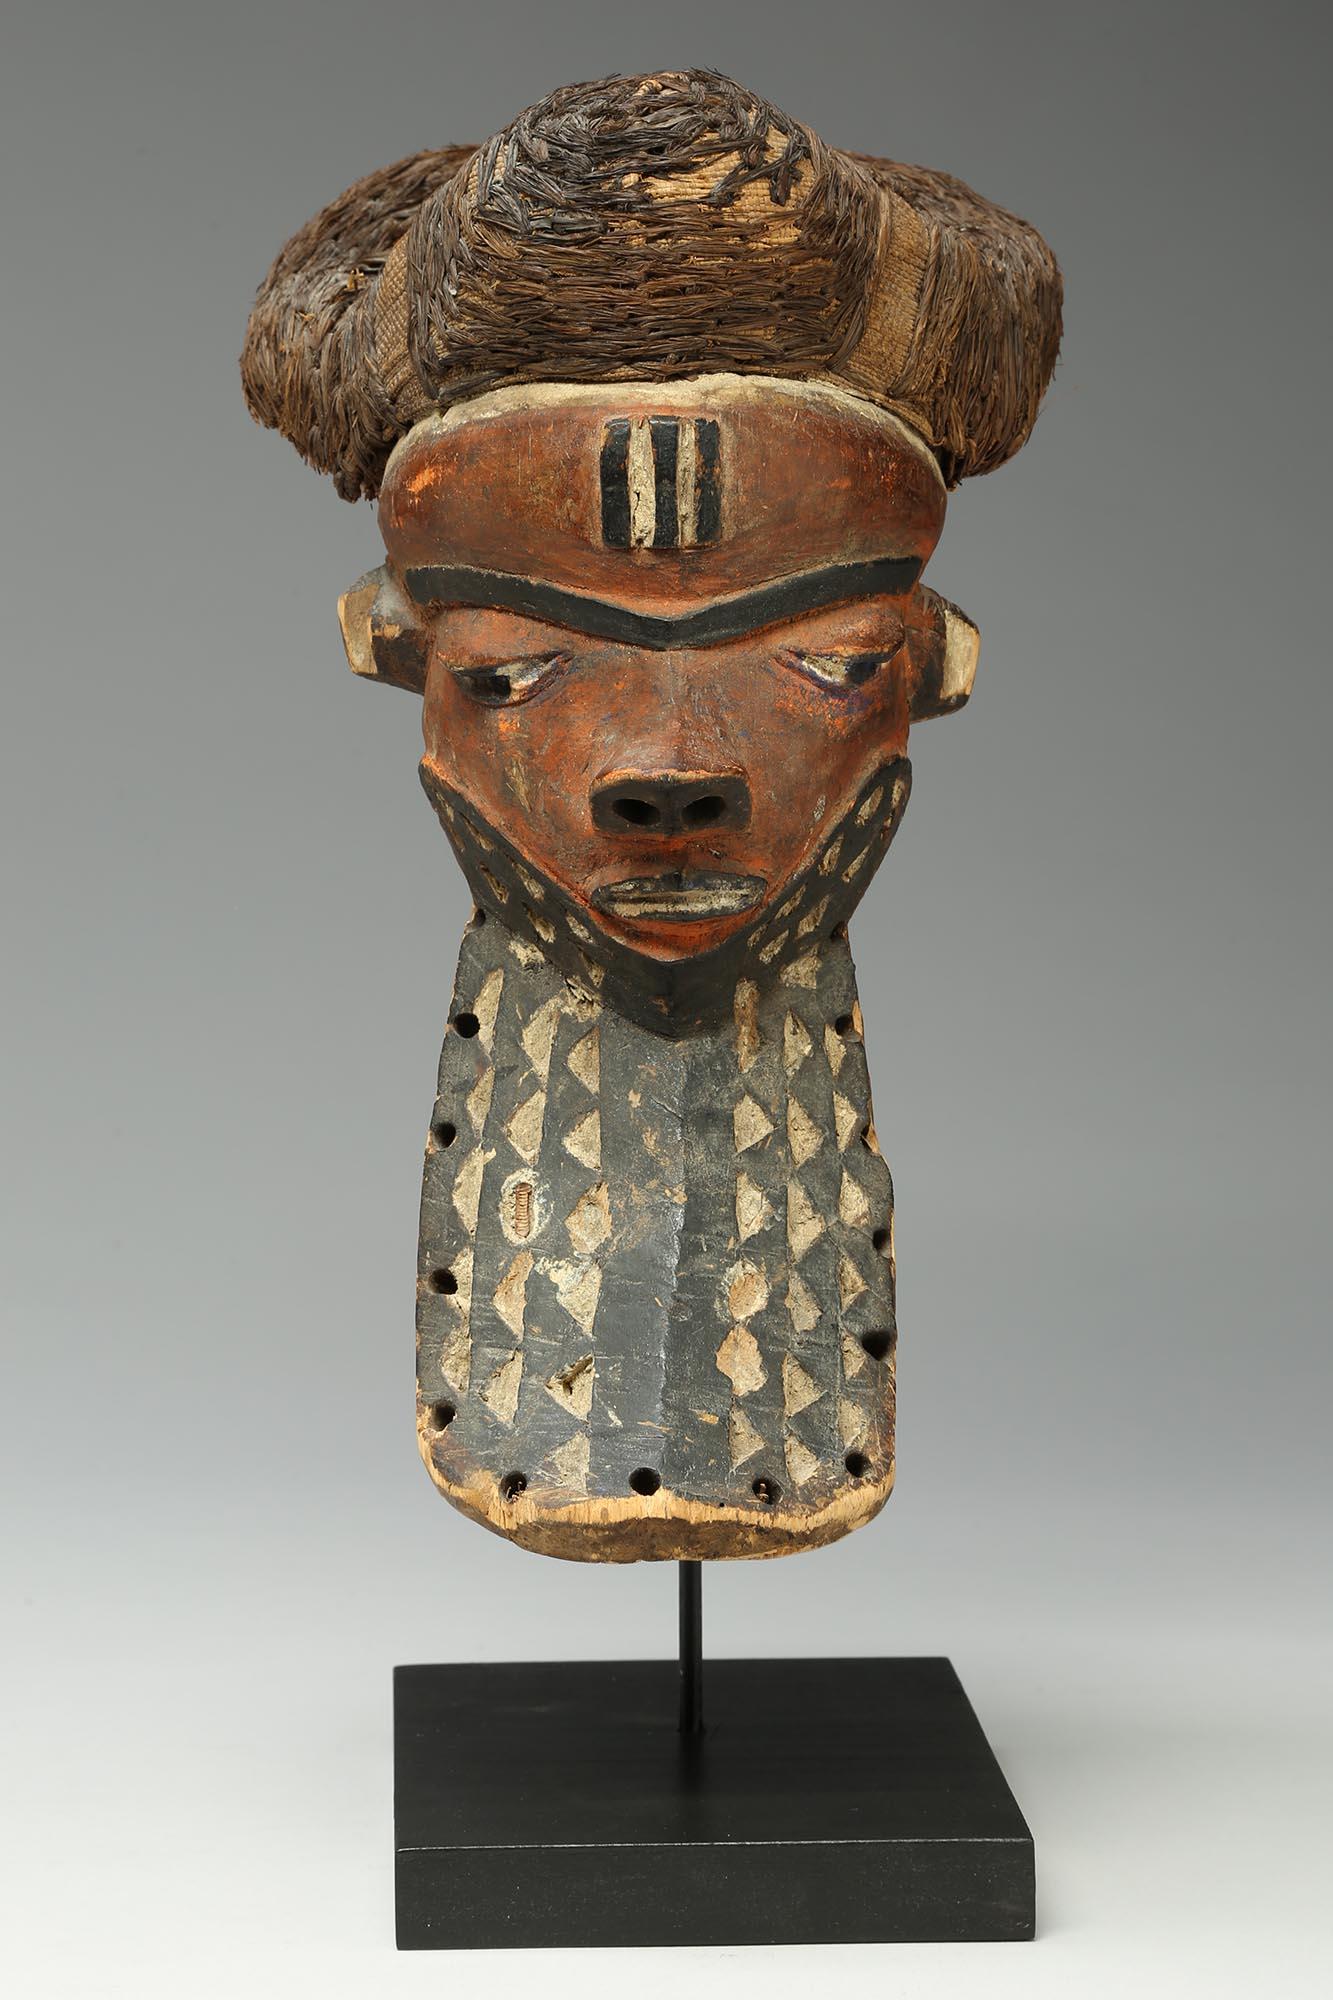 Masque ancien Pende giwoyo avec pigments rouges, barbe noire et blanche avec triangles sculptés et coiffe en raphia noir tressé.
Le masque mesure 13 1/4 pouces de haut, sur une base en bois personnalisée d'une hauteur totale de 14 pouces.

